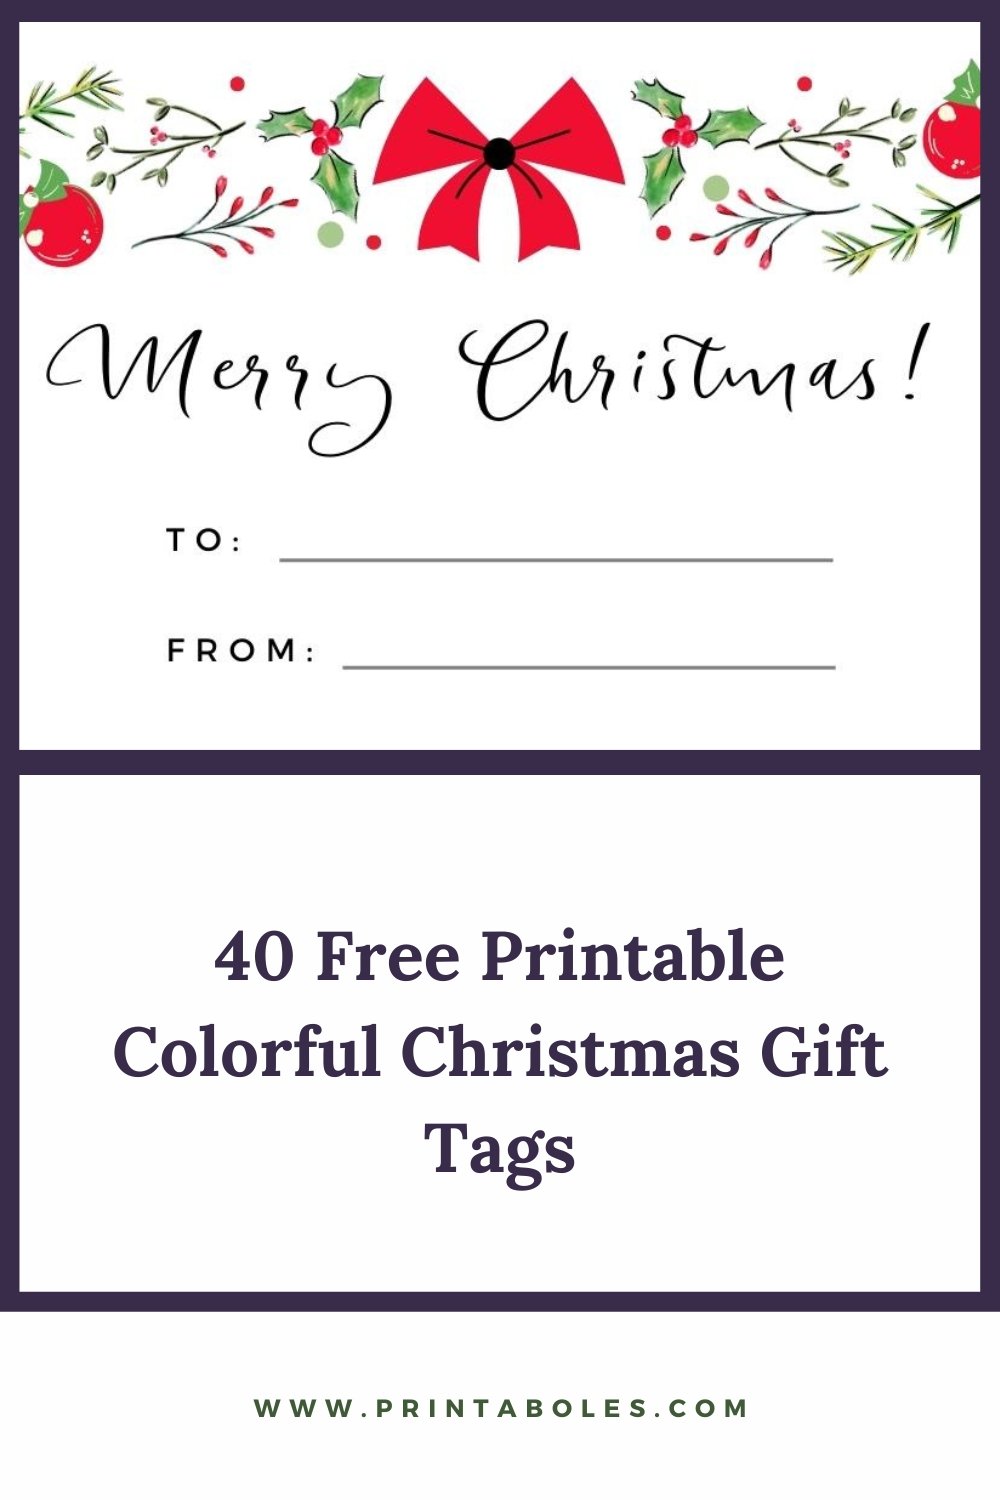 40 Free Printable Colorful Christmas Gift Tags